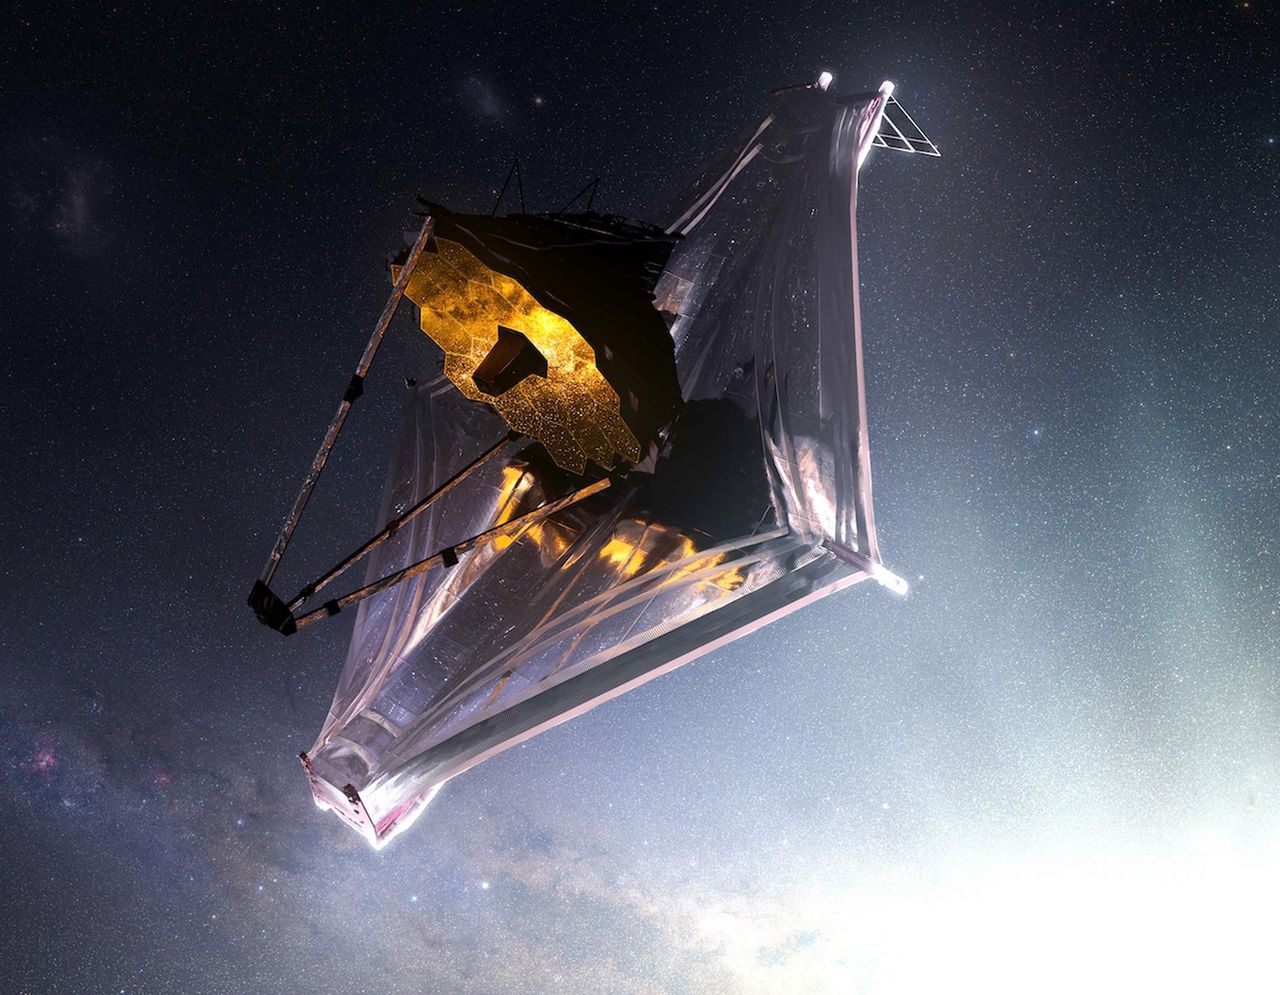 Kosmiczny Teleskop Jamesa Webba dotarł do celu. Centrum kontroli misji świętuje sukces - Kosmiczny Teleskop Jamesa Webba dotarł na miejsce pracy